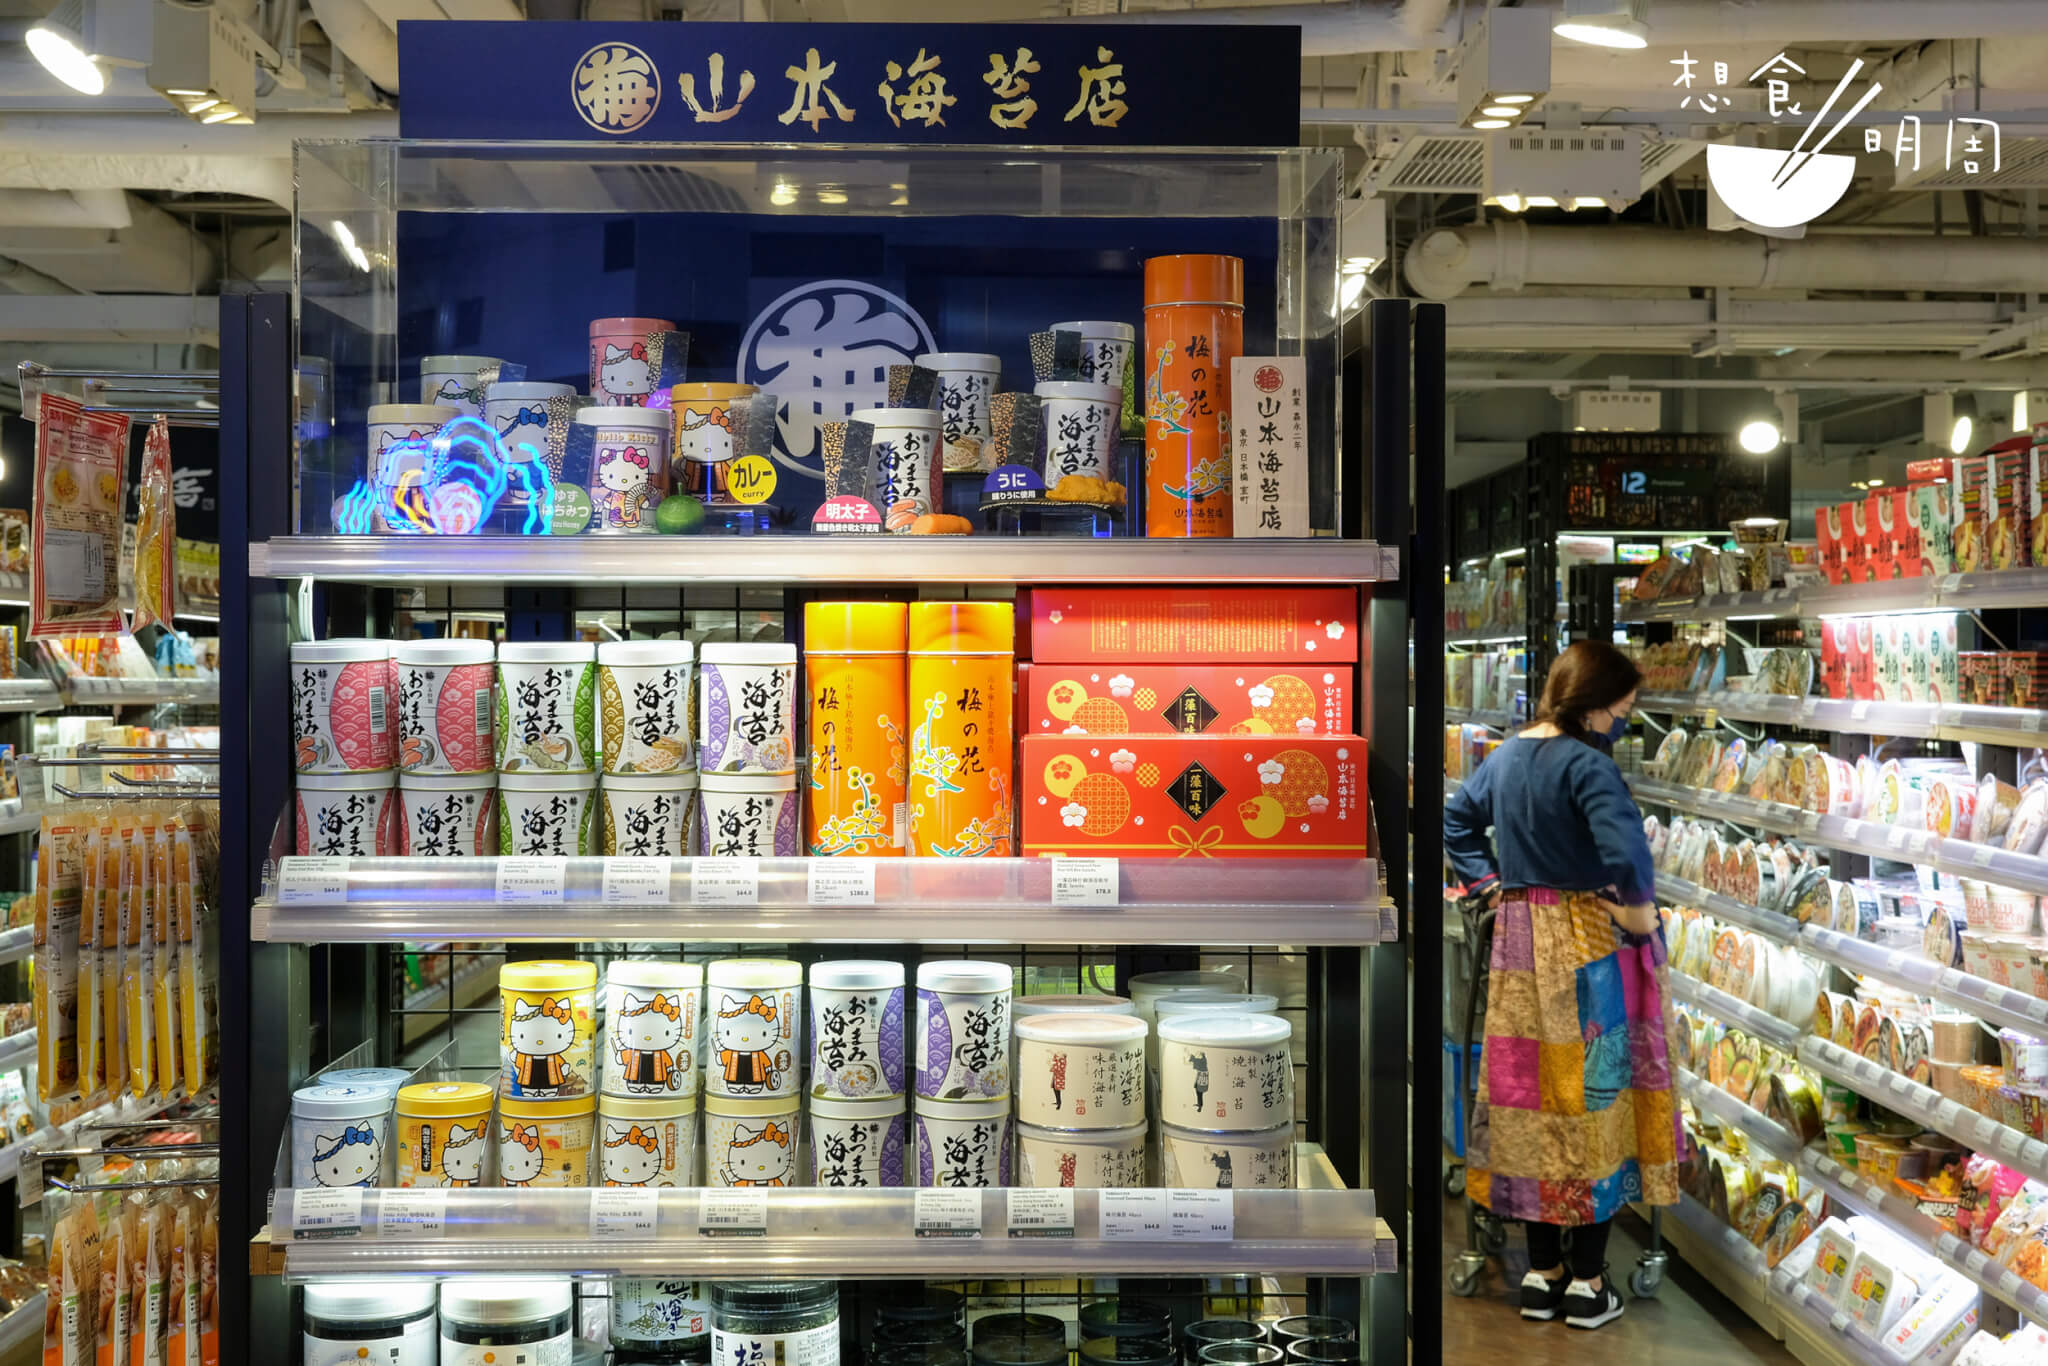 現時city'super售賣的海苔產品中，佐賀海苔產品佔大約一半。